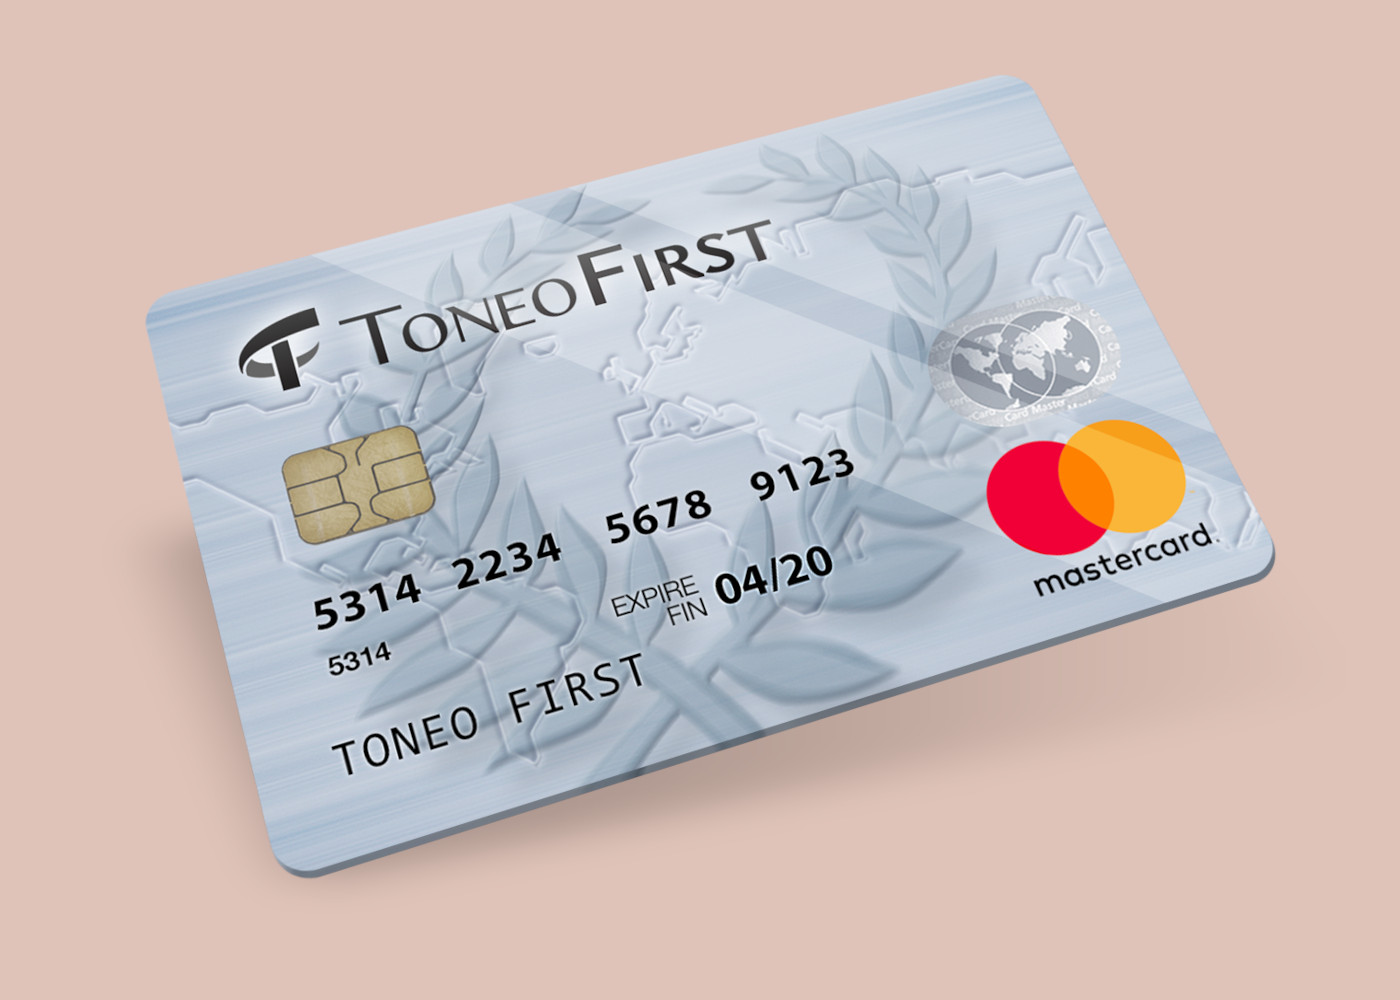 Toneo First Mastercard €150 Gift Card EU